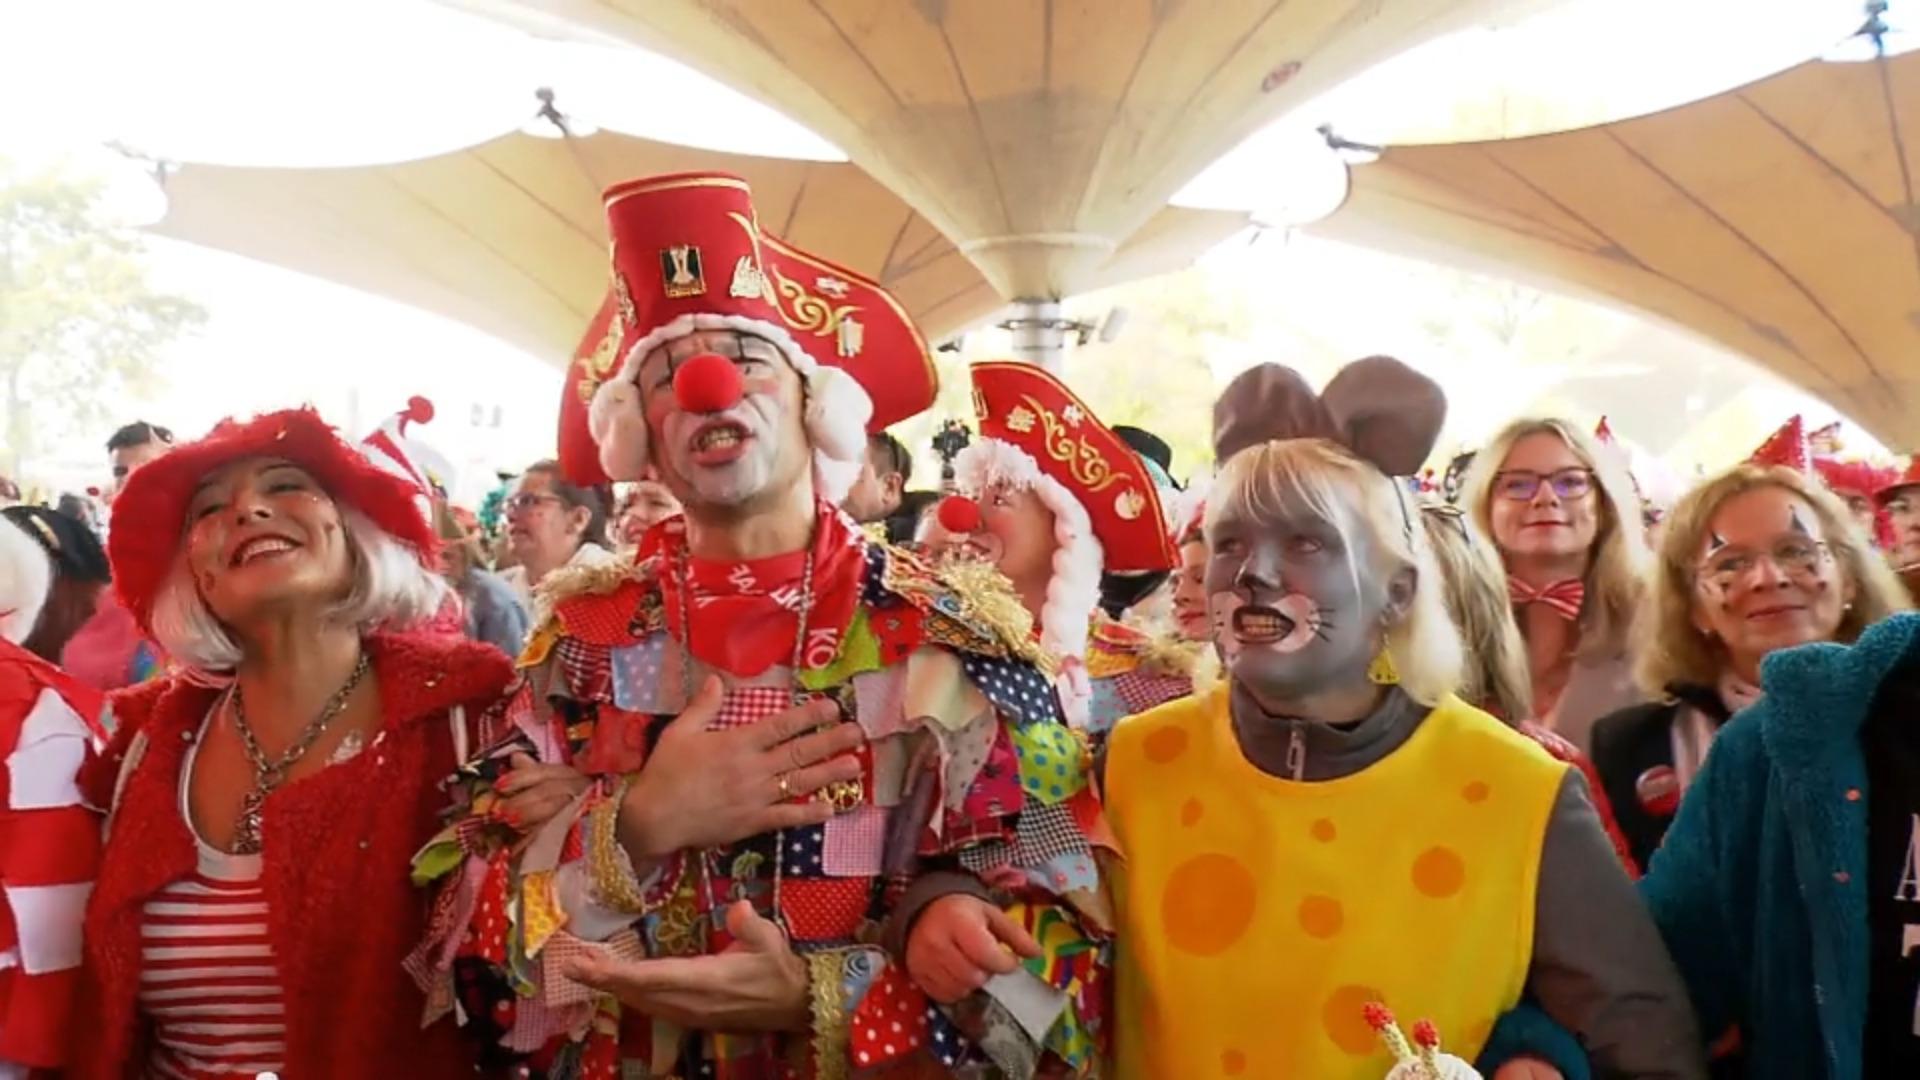 Jusqu'à 10 000 euros d'amende menacent !  Costumes de carnaval interdits